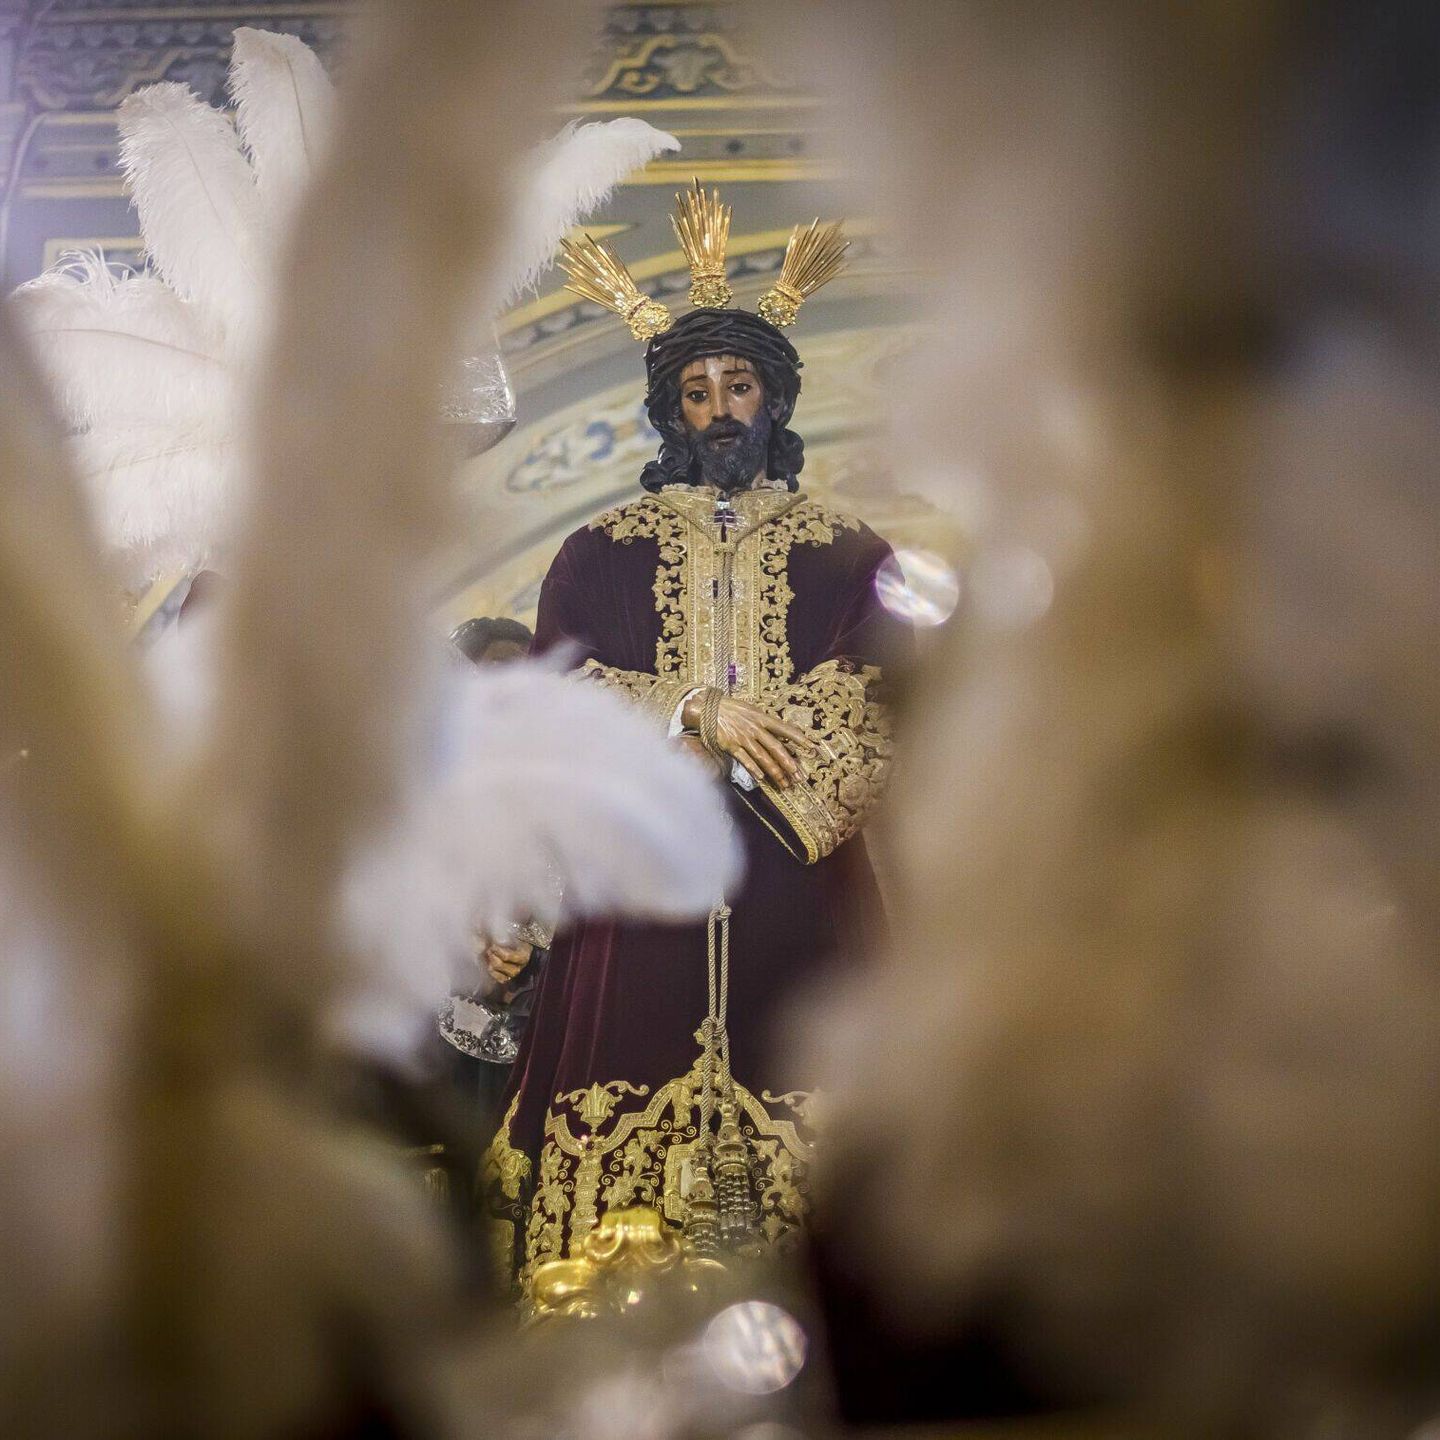 400 años de historia contemplan la Semana Santa de Sevilla. (EFE)